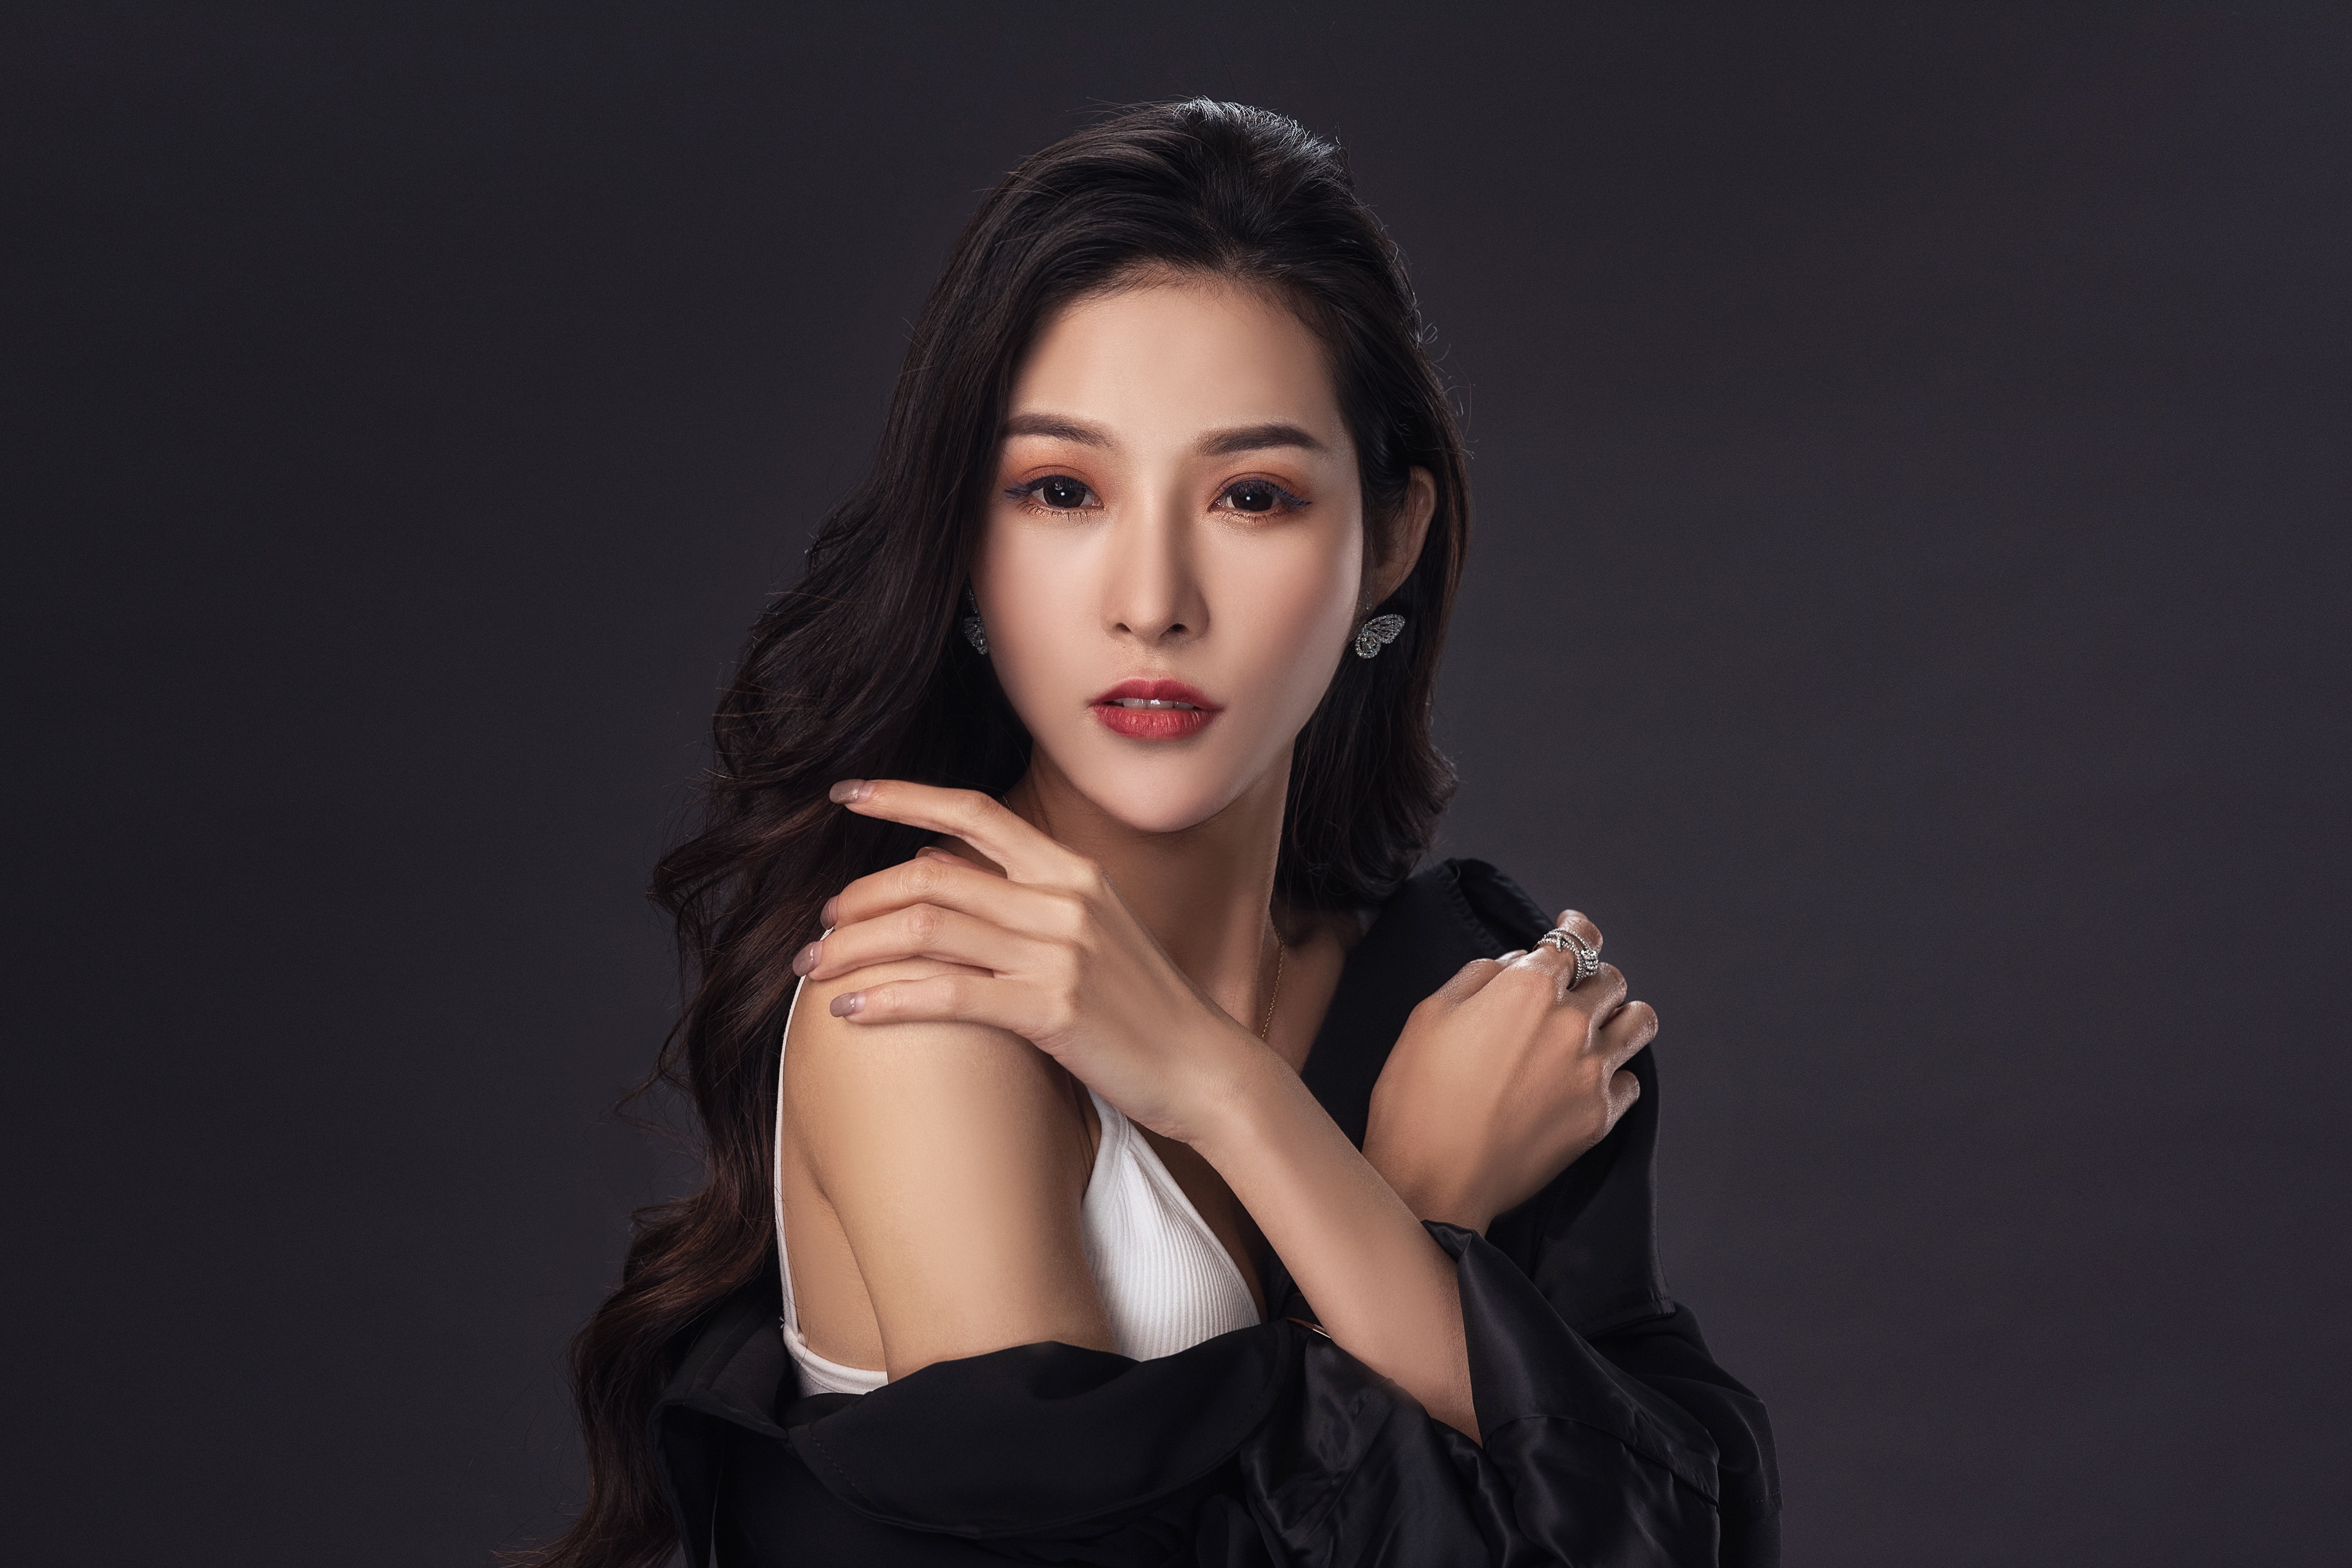 Asian Model Women Long Hair Brunette Earring White Dress Black Scarf 4000x2667